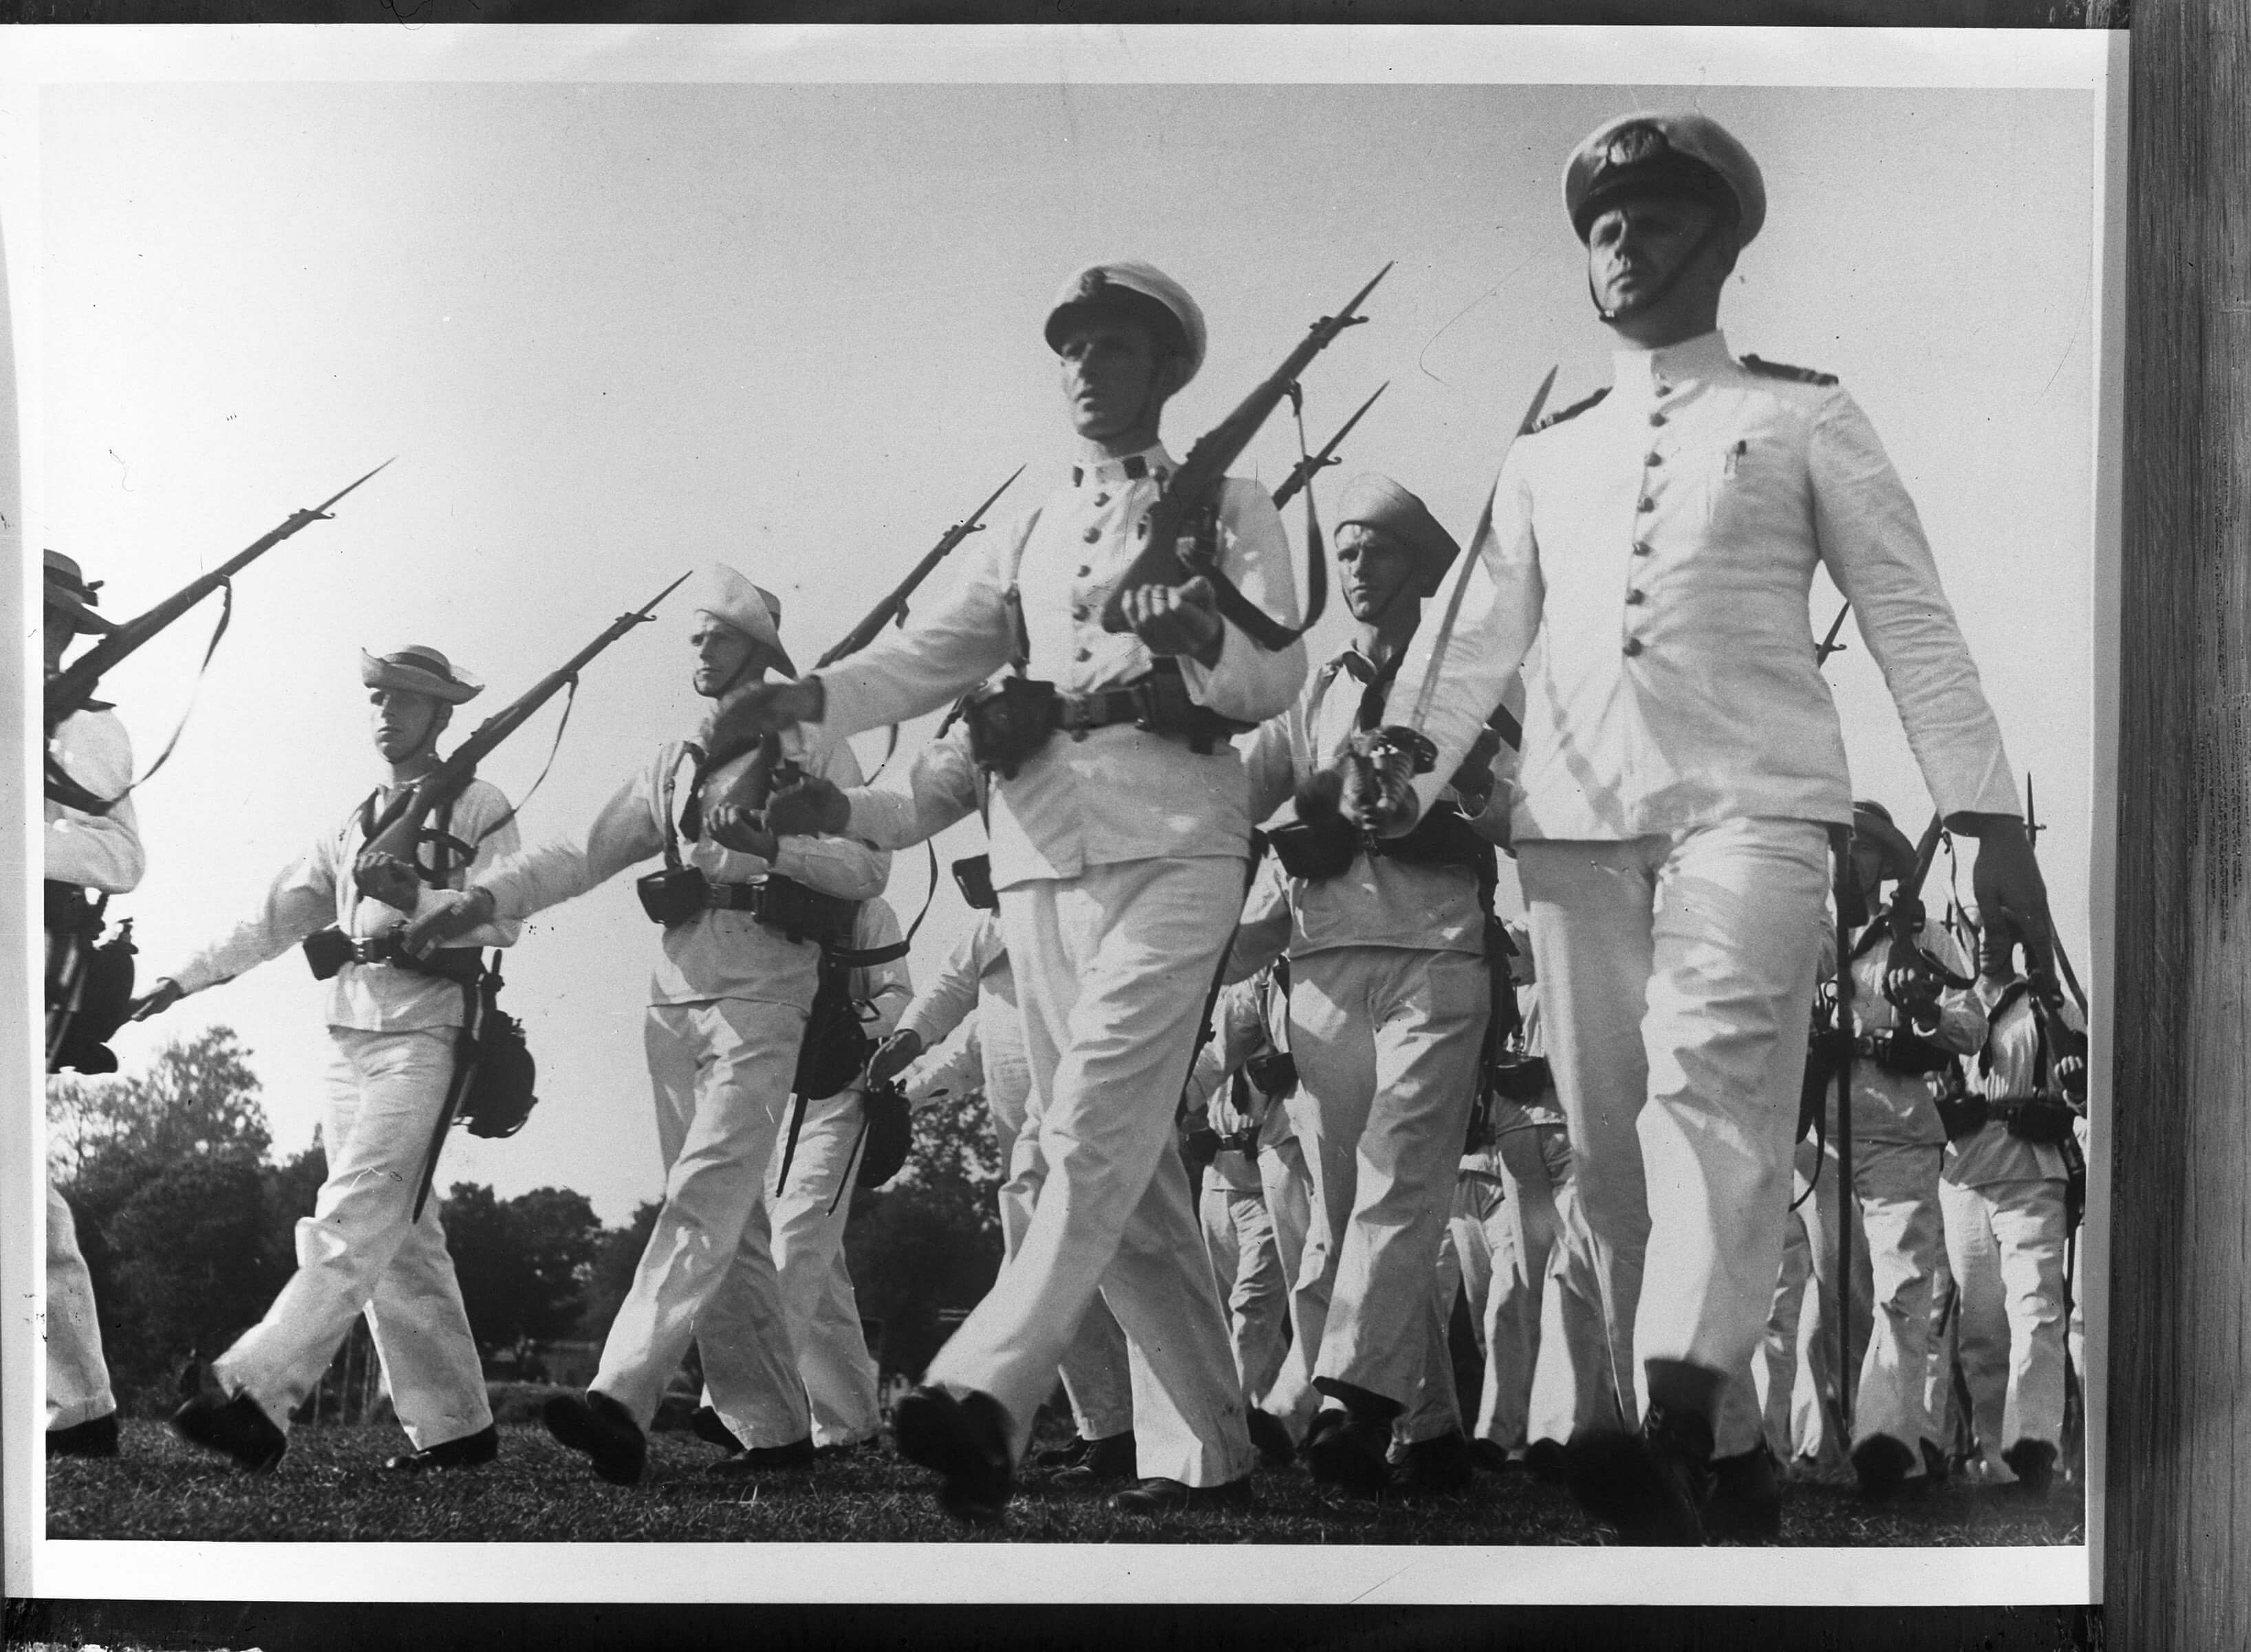 deJong-foto1-De Koninklijke Marine in Nederlands-Indië. Marcherende mariniers tijdens een parade-1940-1942-Fotocollectie Anefo-Nationaal Archief